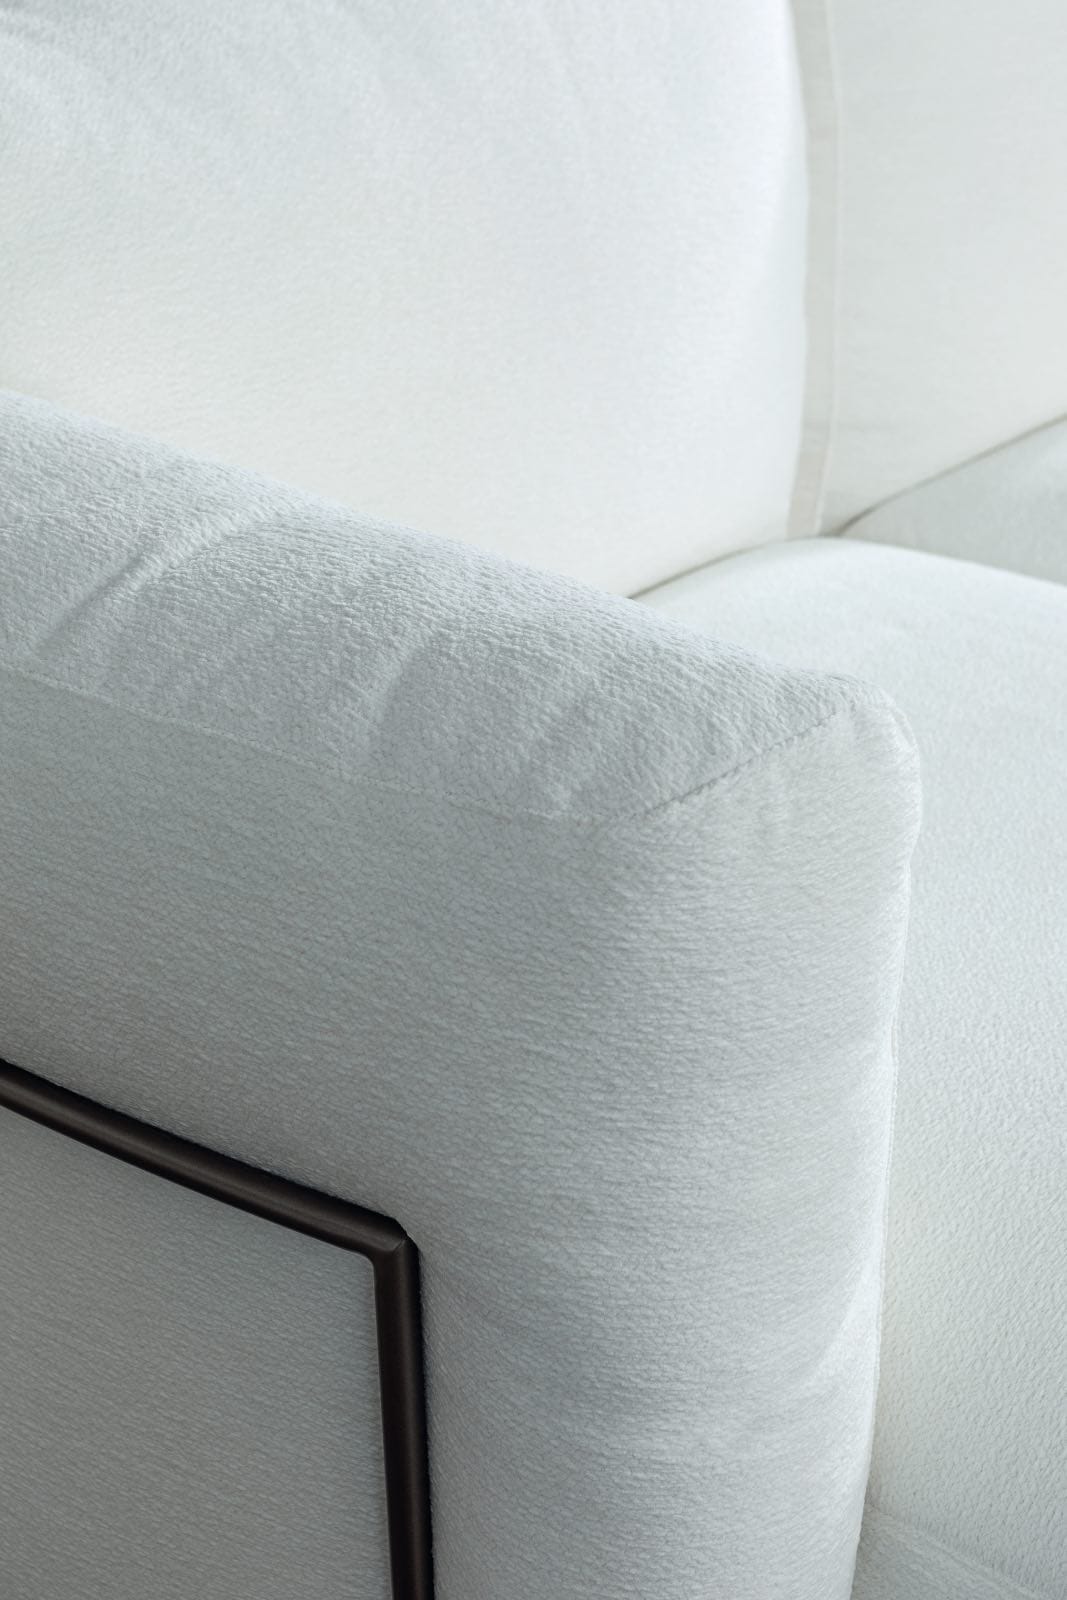 detalle de sofá modular blanco de diseño